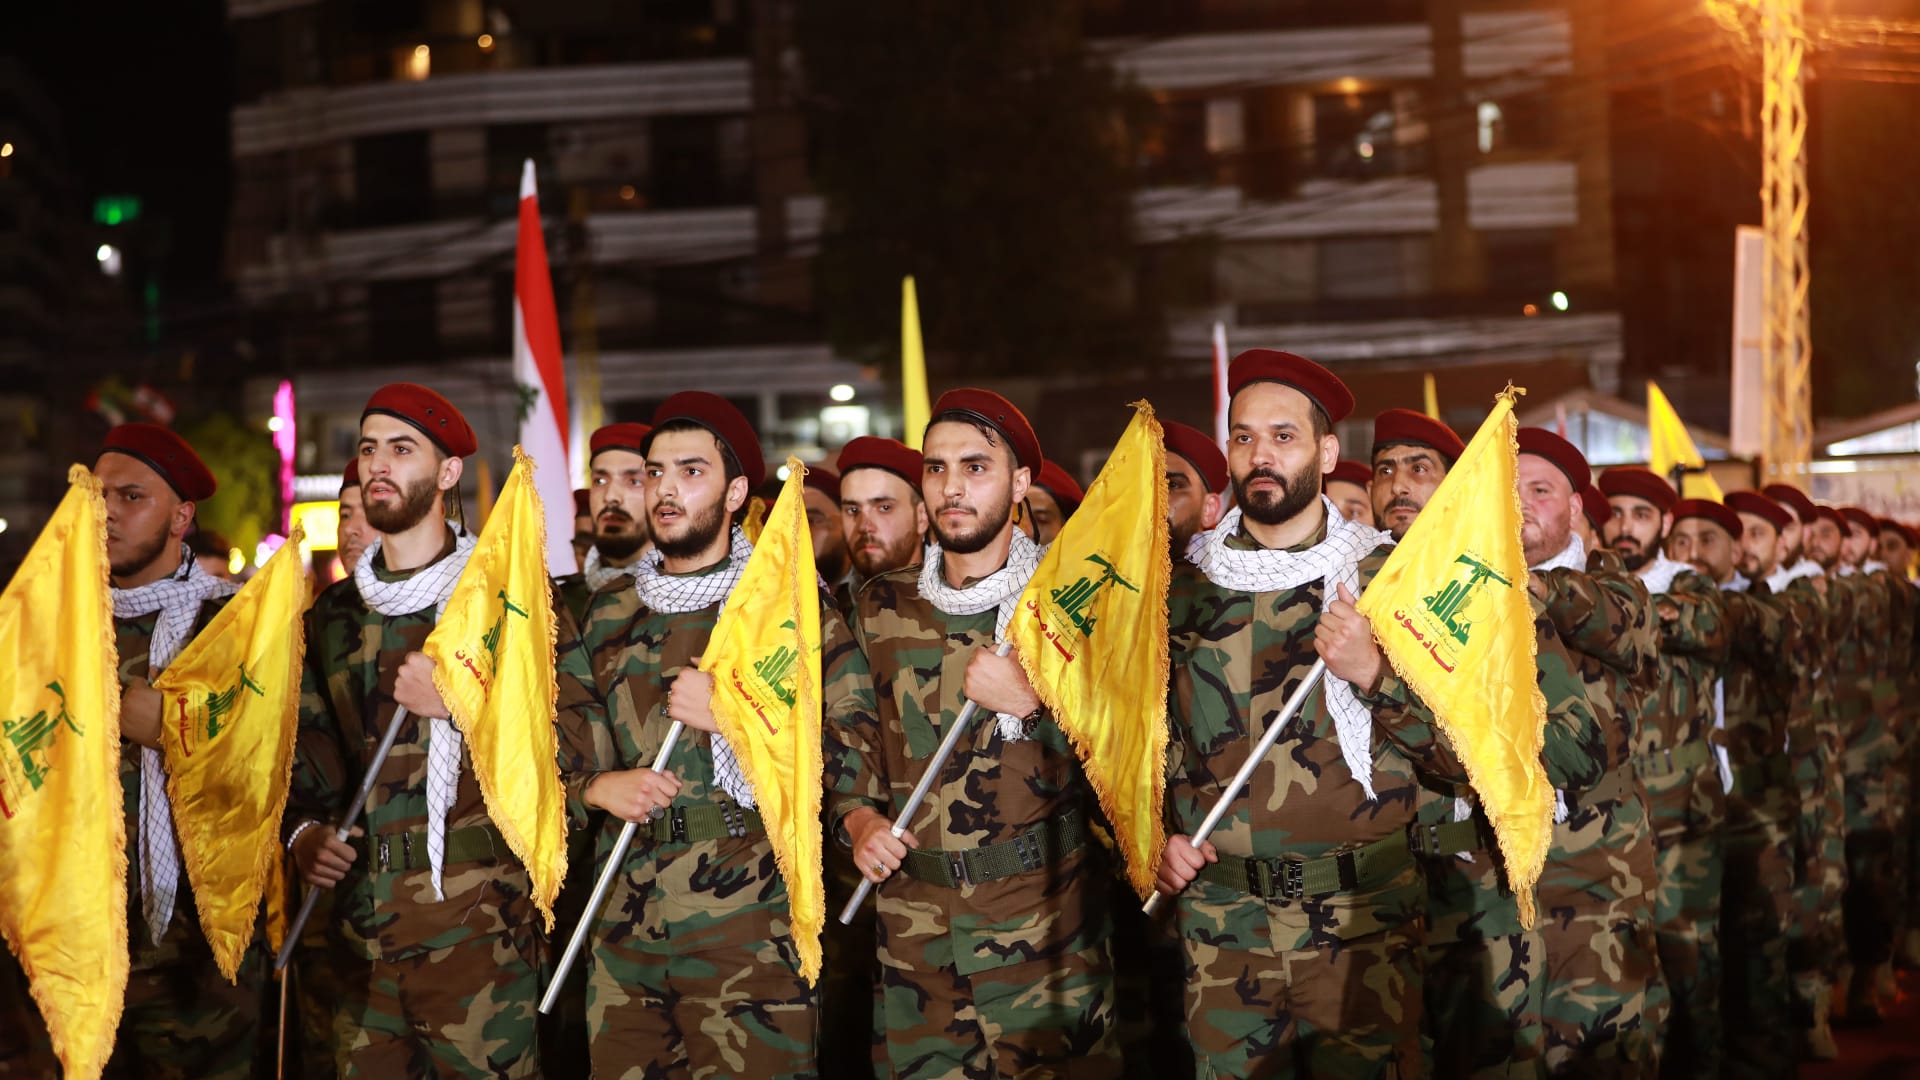 دانون: على مجلس الأمن تصنيف حزب الله كمنظمة إرهابية